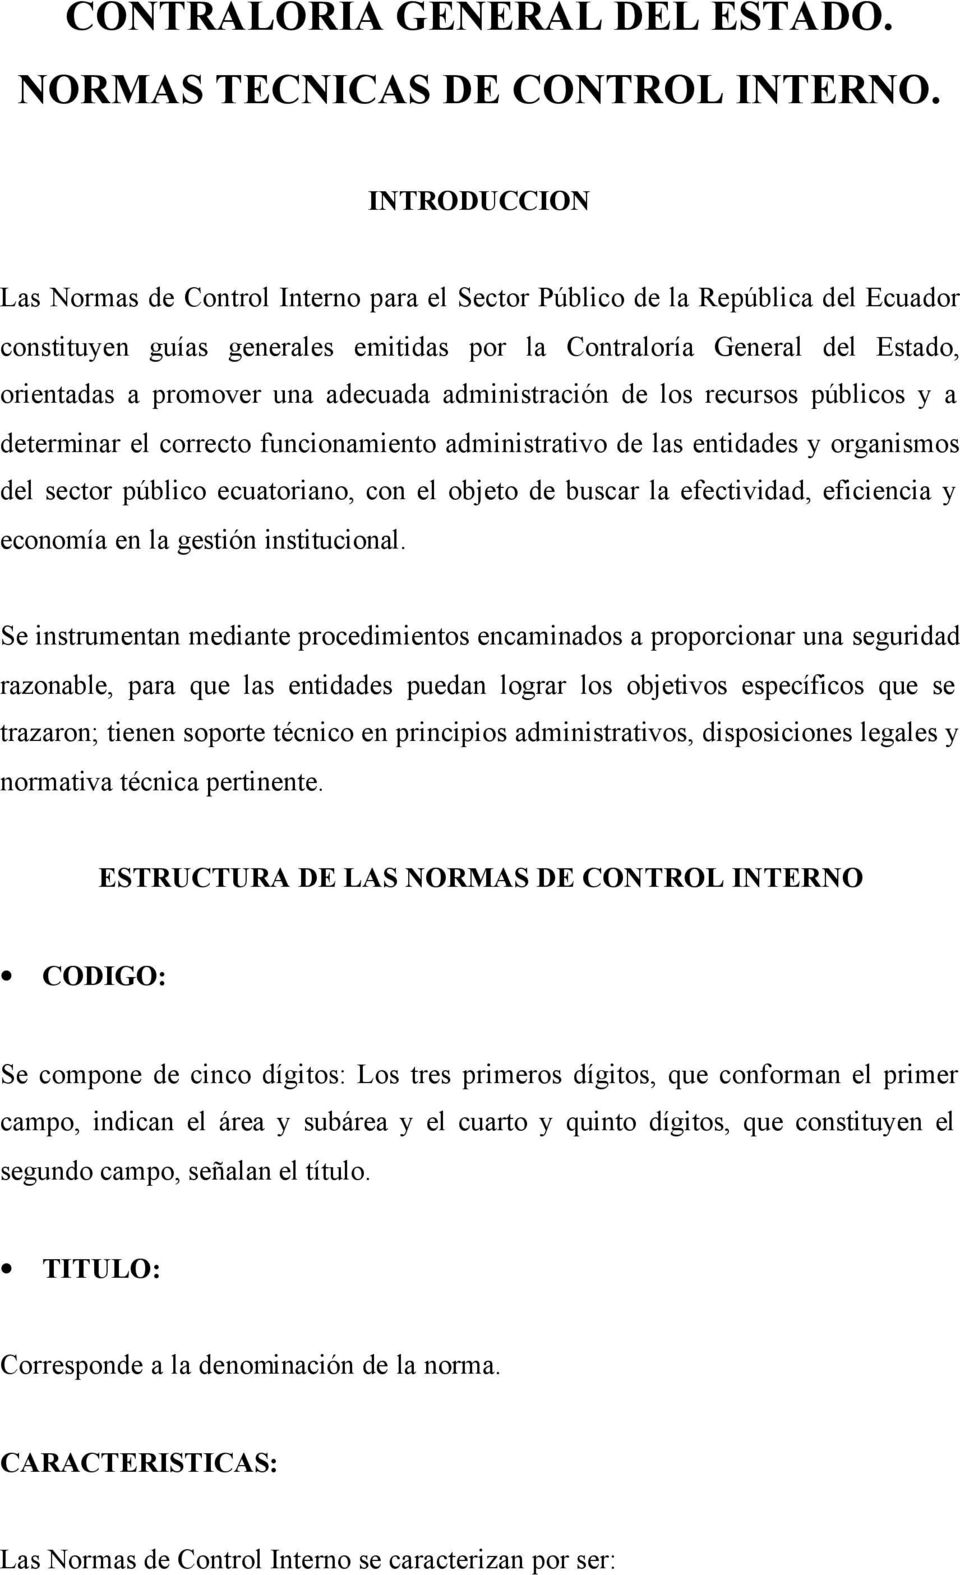 adecuada administración de los recursos públicos y a determinar el correcto funcionamiento administrativo de las entidades y organismos del sector público ecuatoriano, con el objeto de buscar la